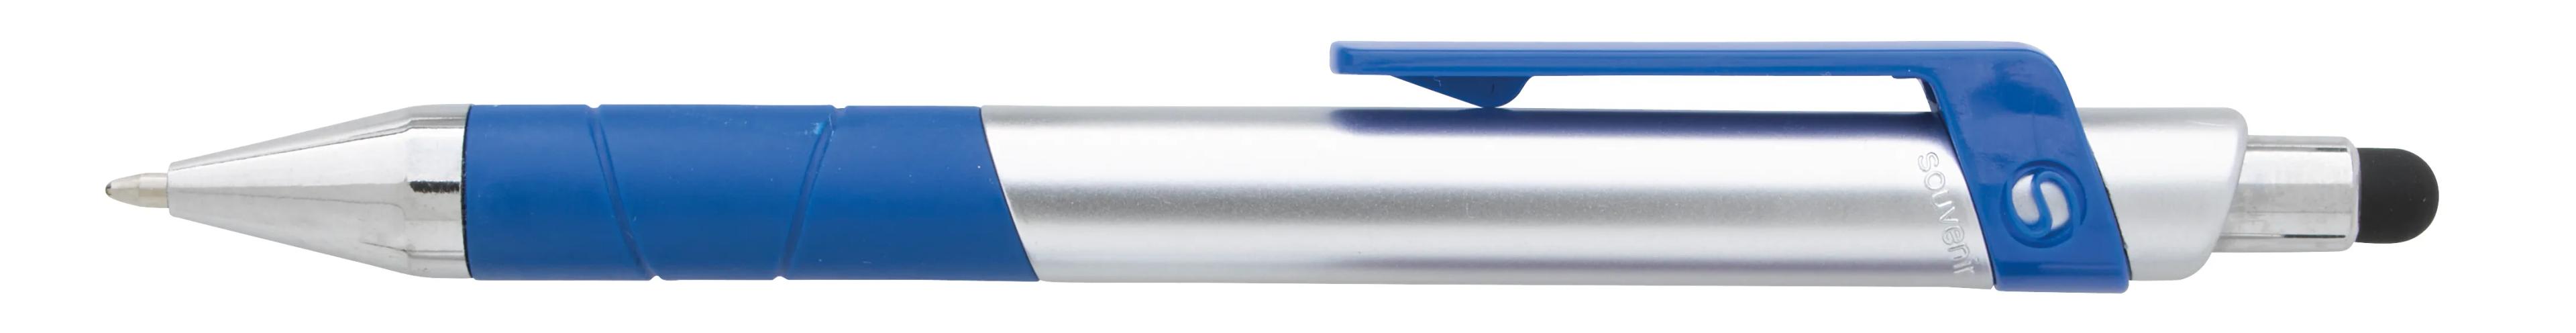 Souvenir® Rize Stylus Pen 9 of 28